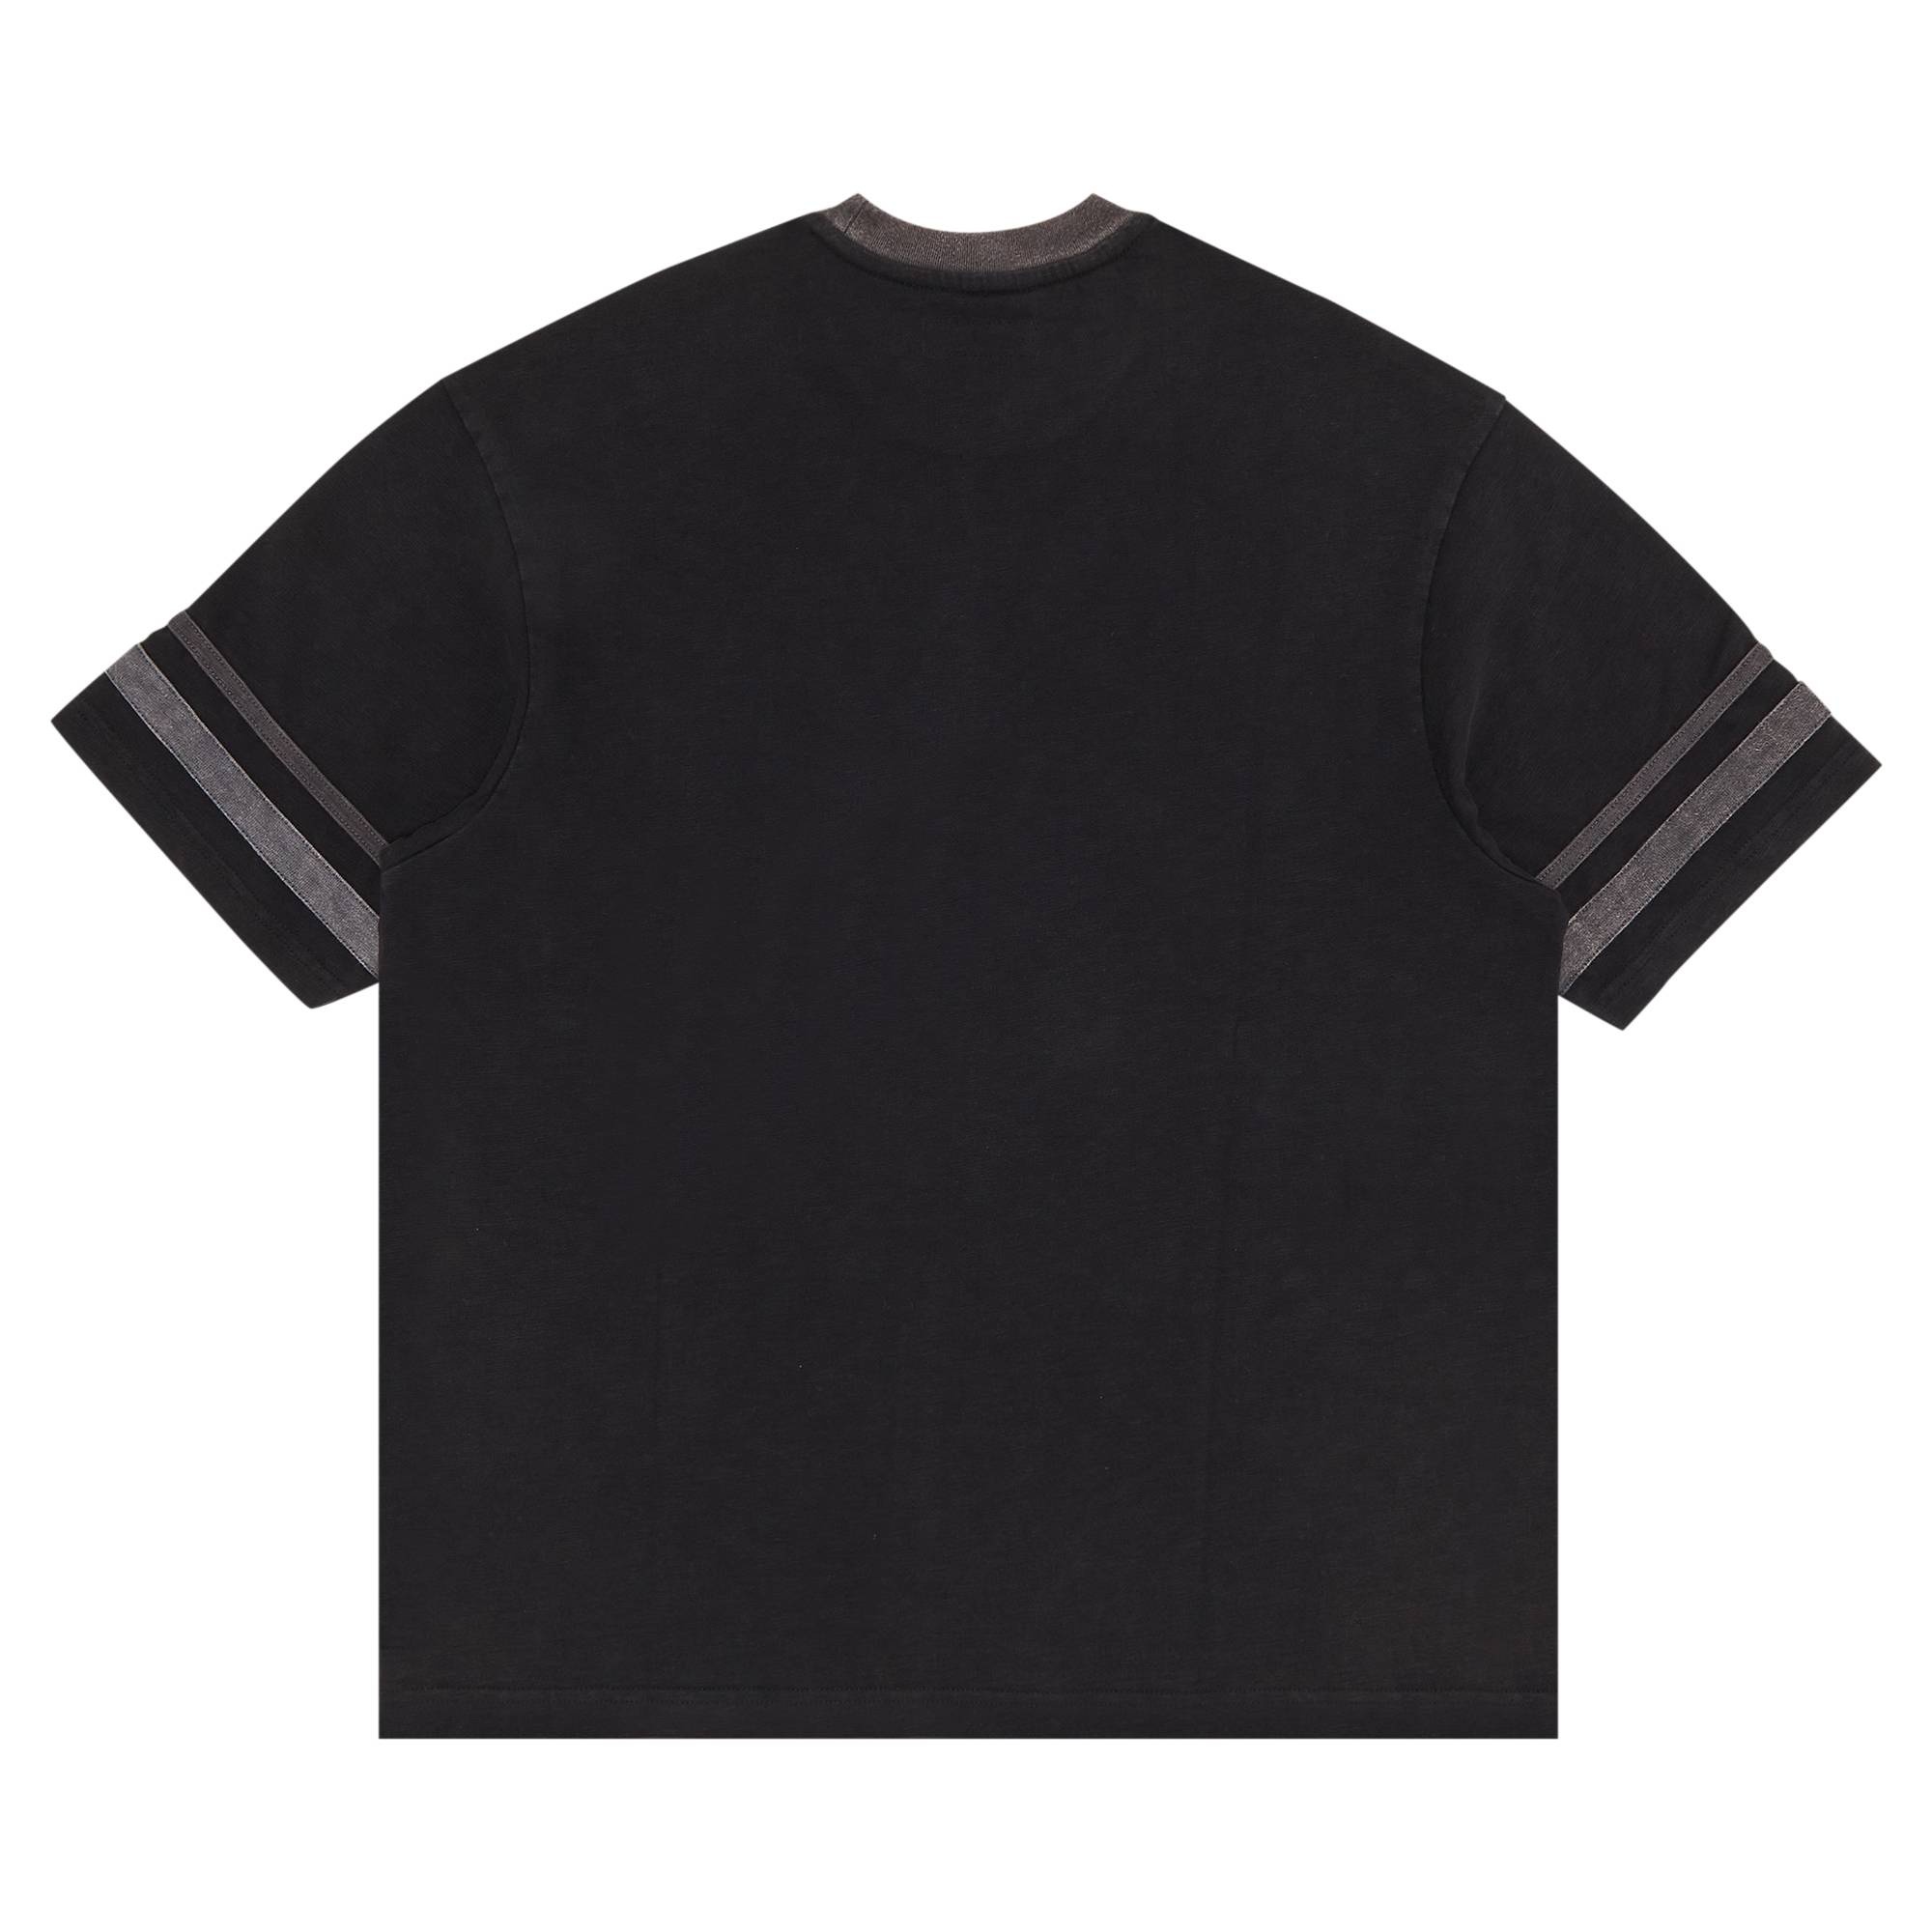 Supreme Supreme Glazed Athletic Short-Sleeve Top 'Black' | REVERSIBLE